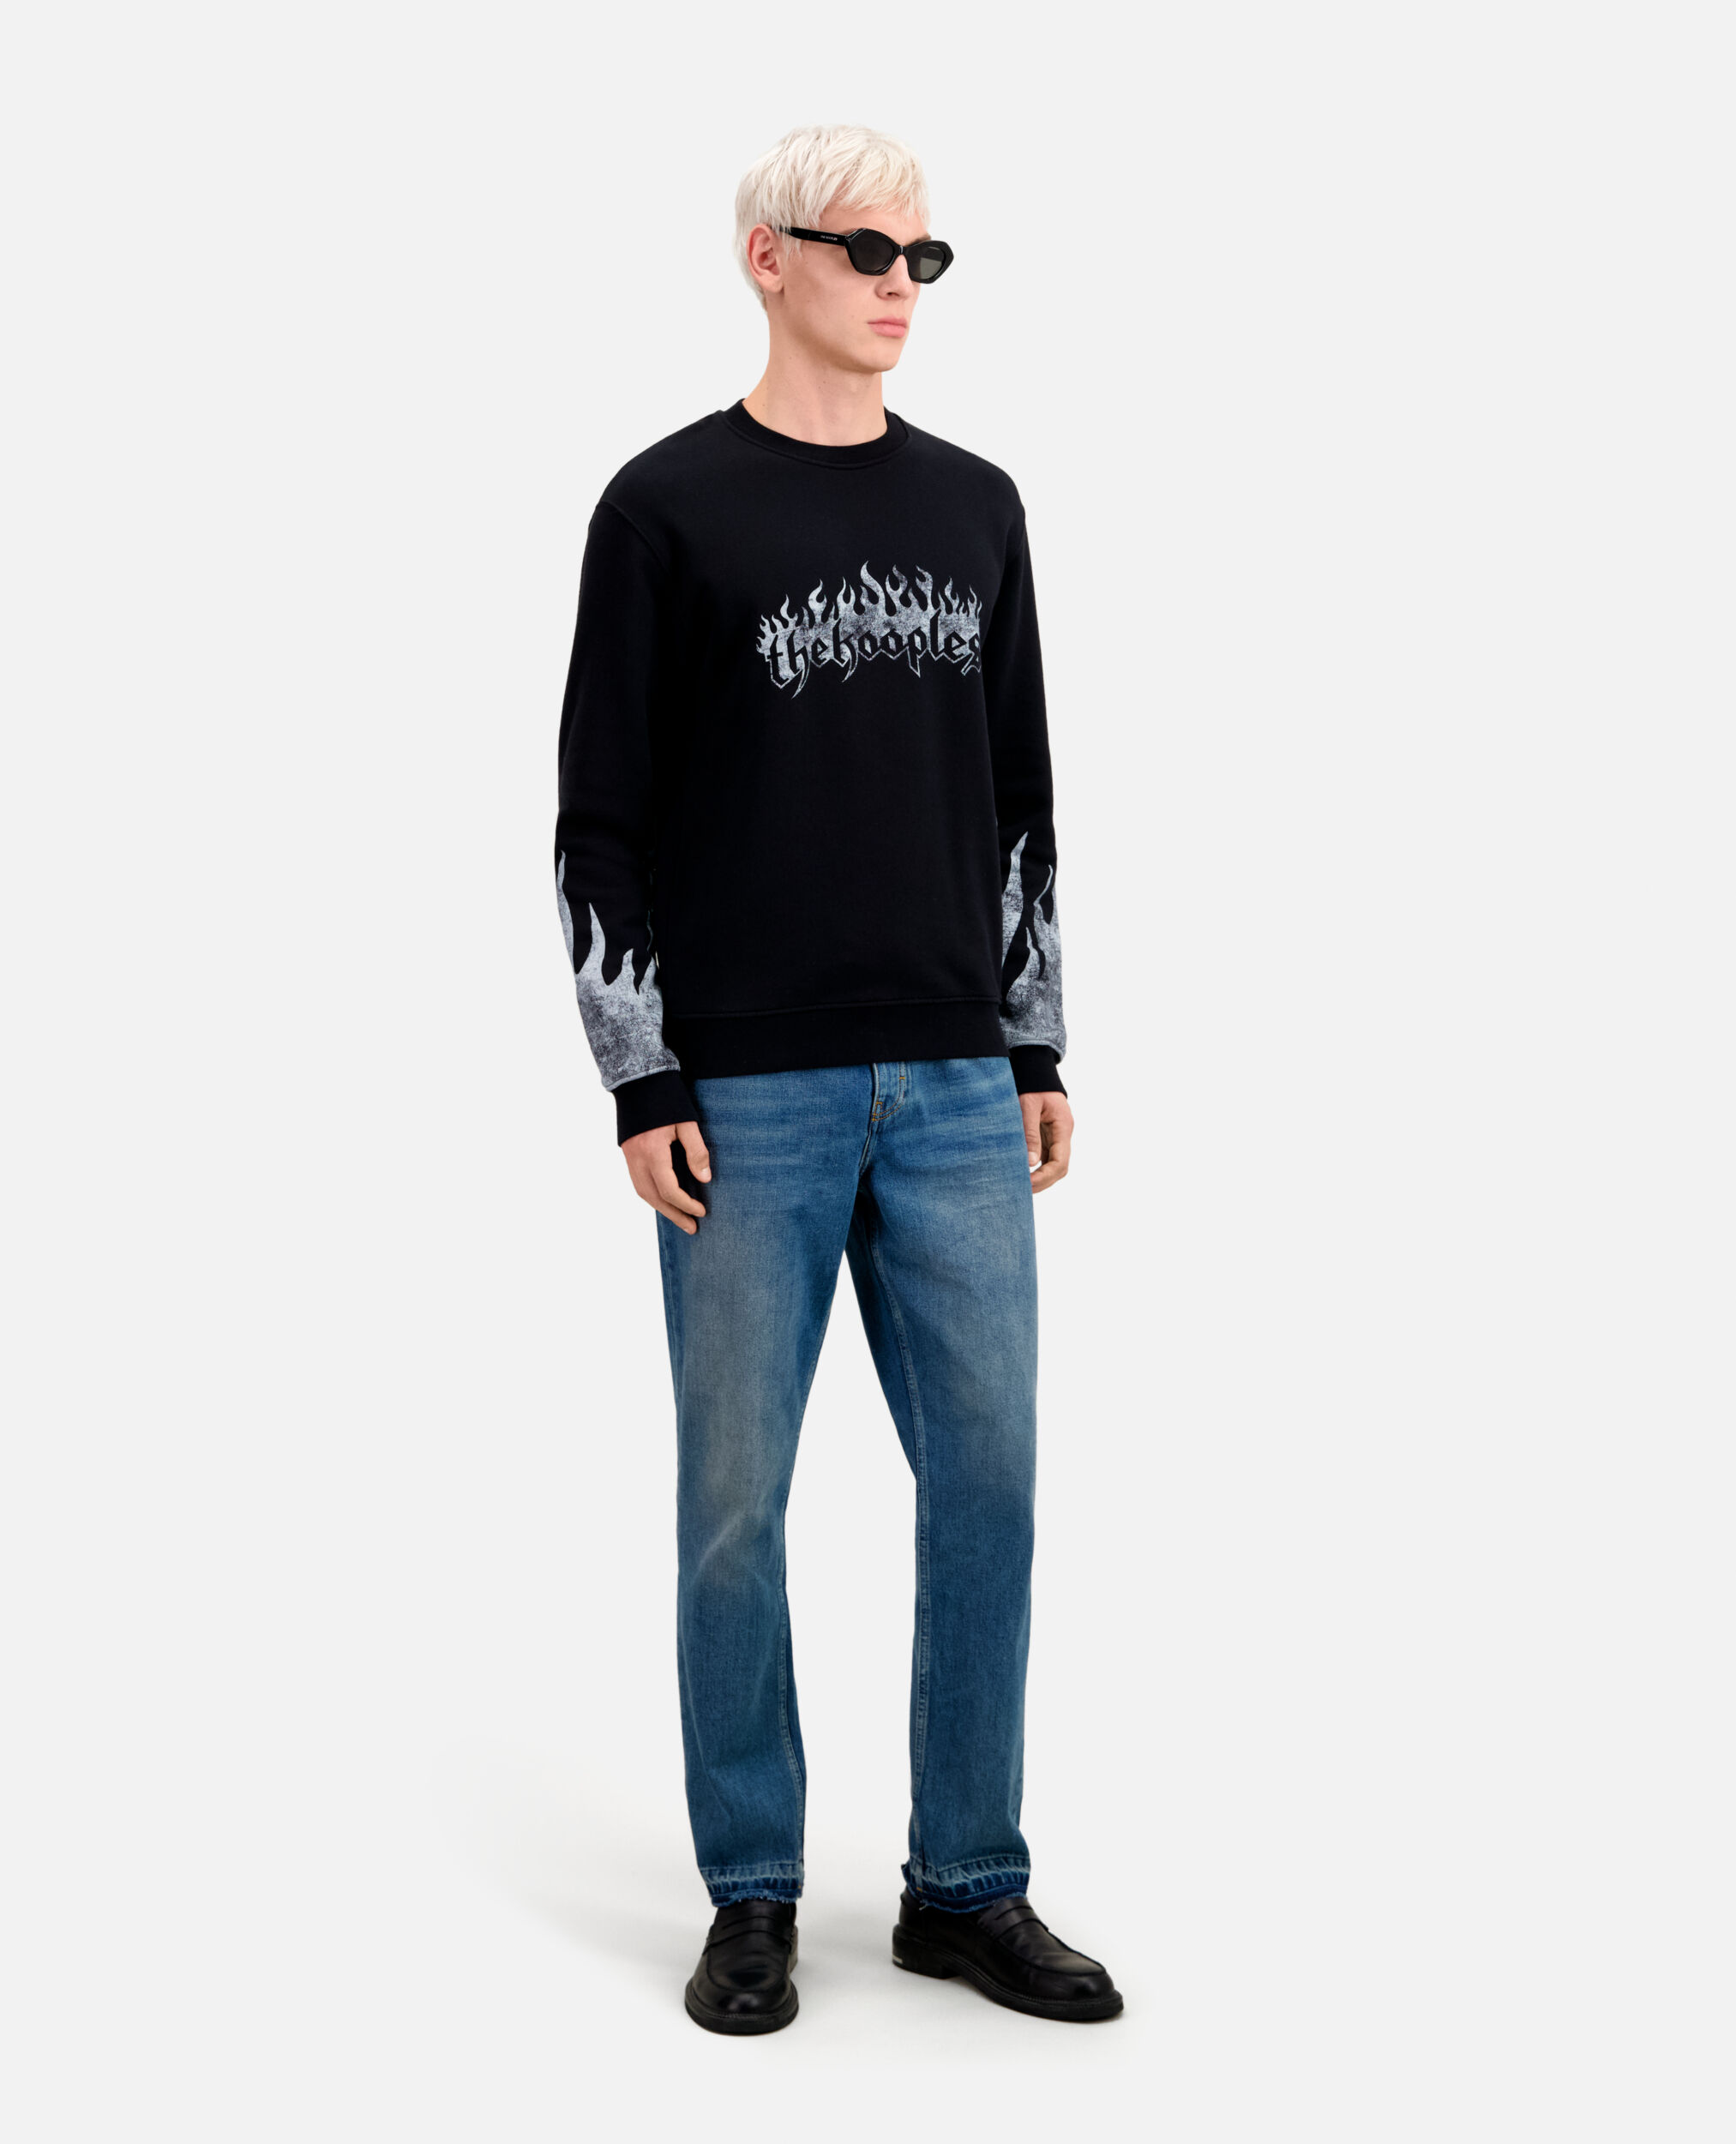 Sweatshirt Homme noir avec sérigraphie Kooples on fire, BLACK, hi-res image number null